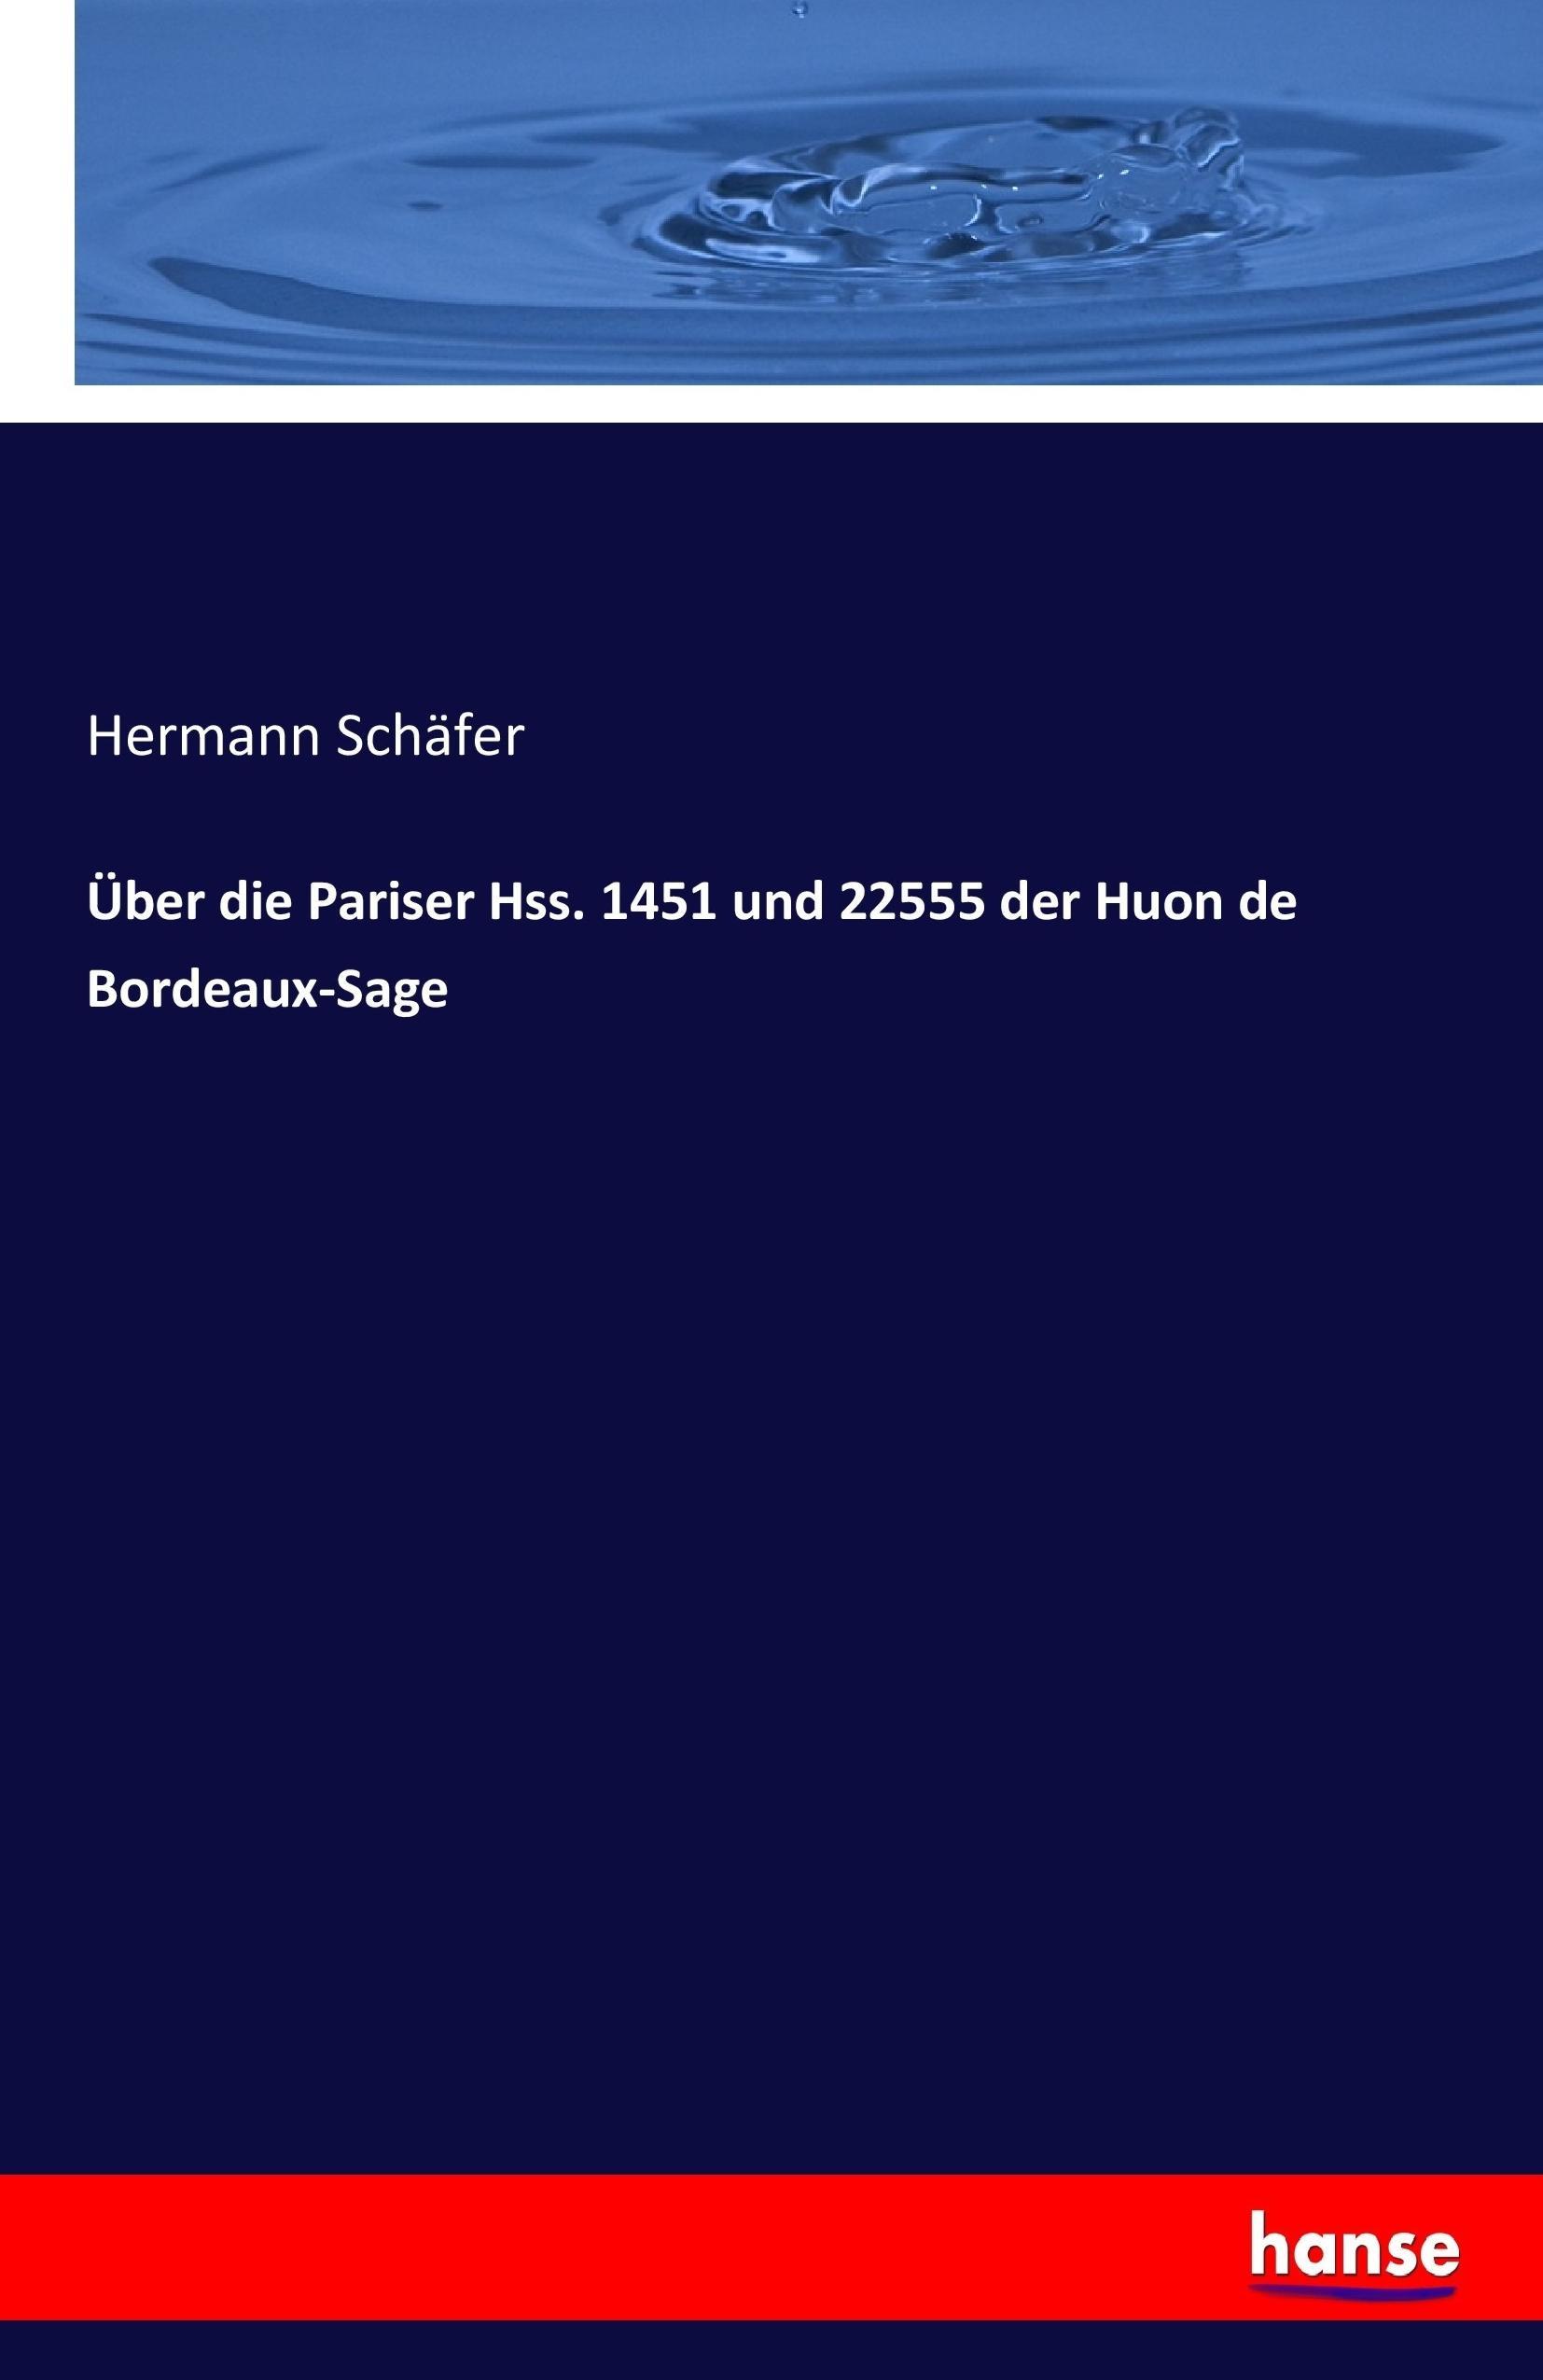 Ueber die Pariser Hss. 1451 und 22555 der Huon de Bordeaux-Sage - Schaefer, Hermann